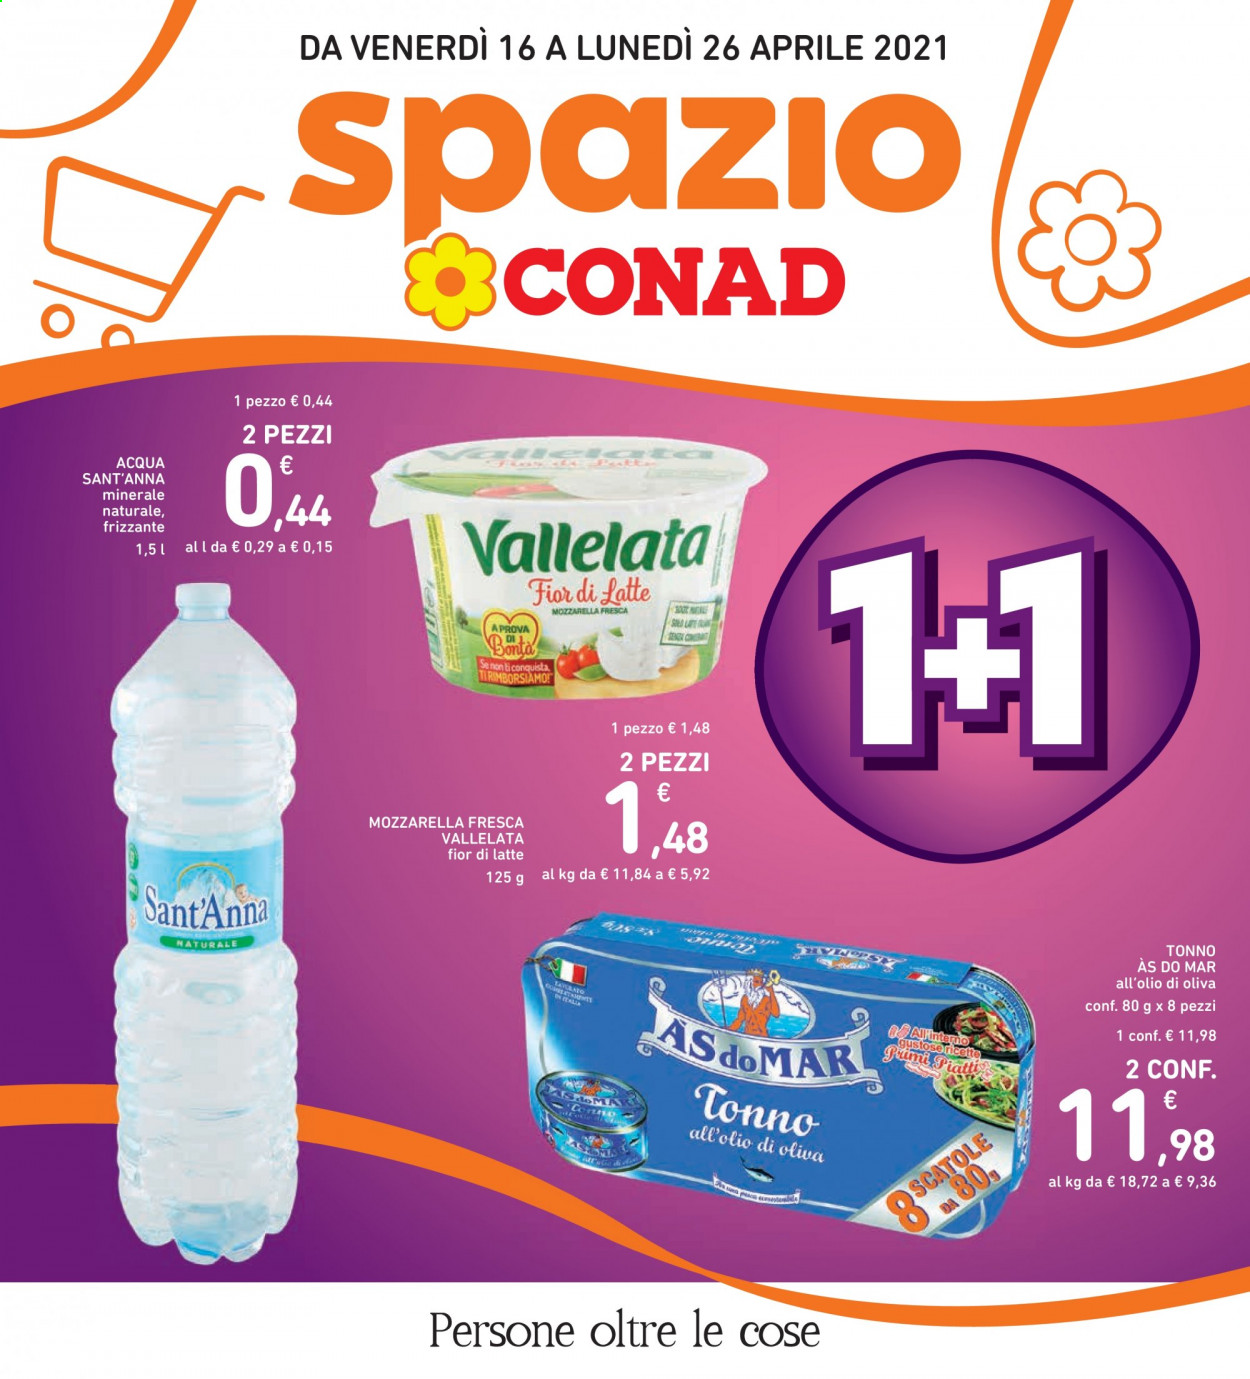 thumbnail - Volantino Conad - 16/4/2021 - 26/4/2021 - Prodotti in offerta - tonno, Fior di Latte, Vallelata, tonno sott'olio, AsdoMAR. Pagina 1.